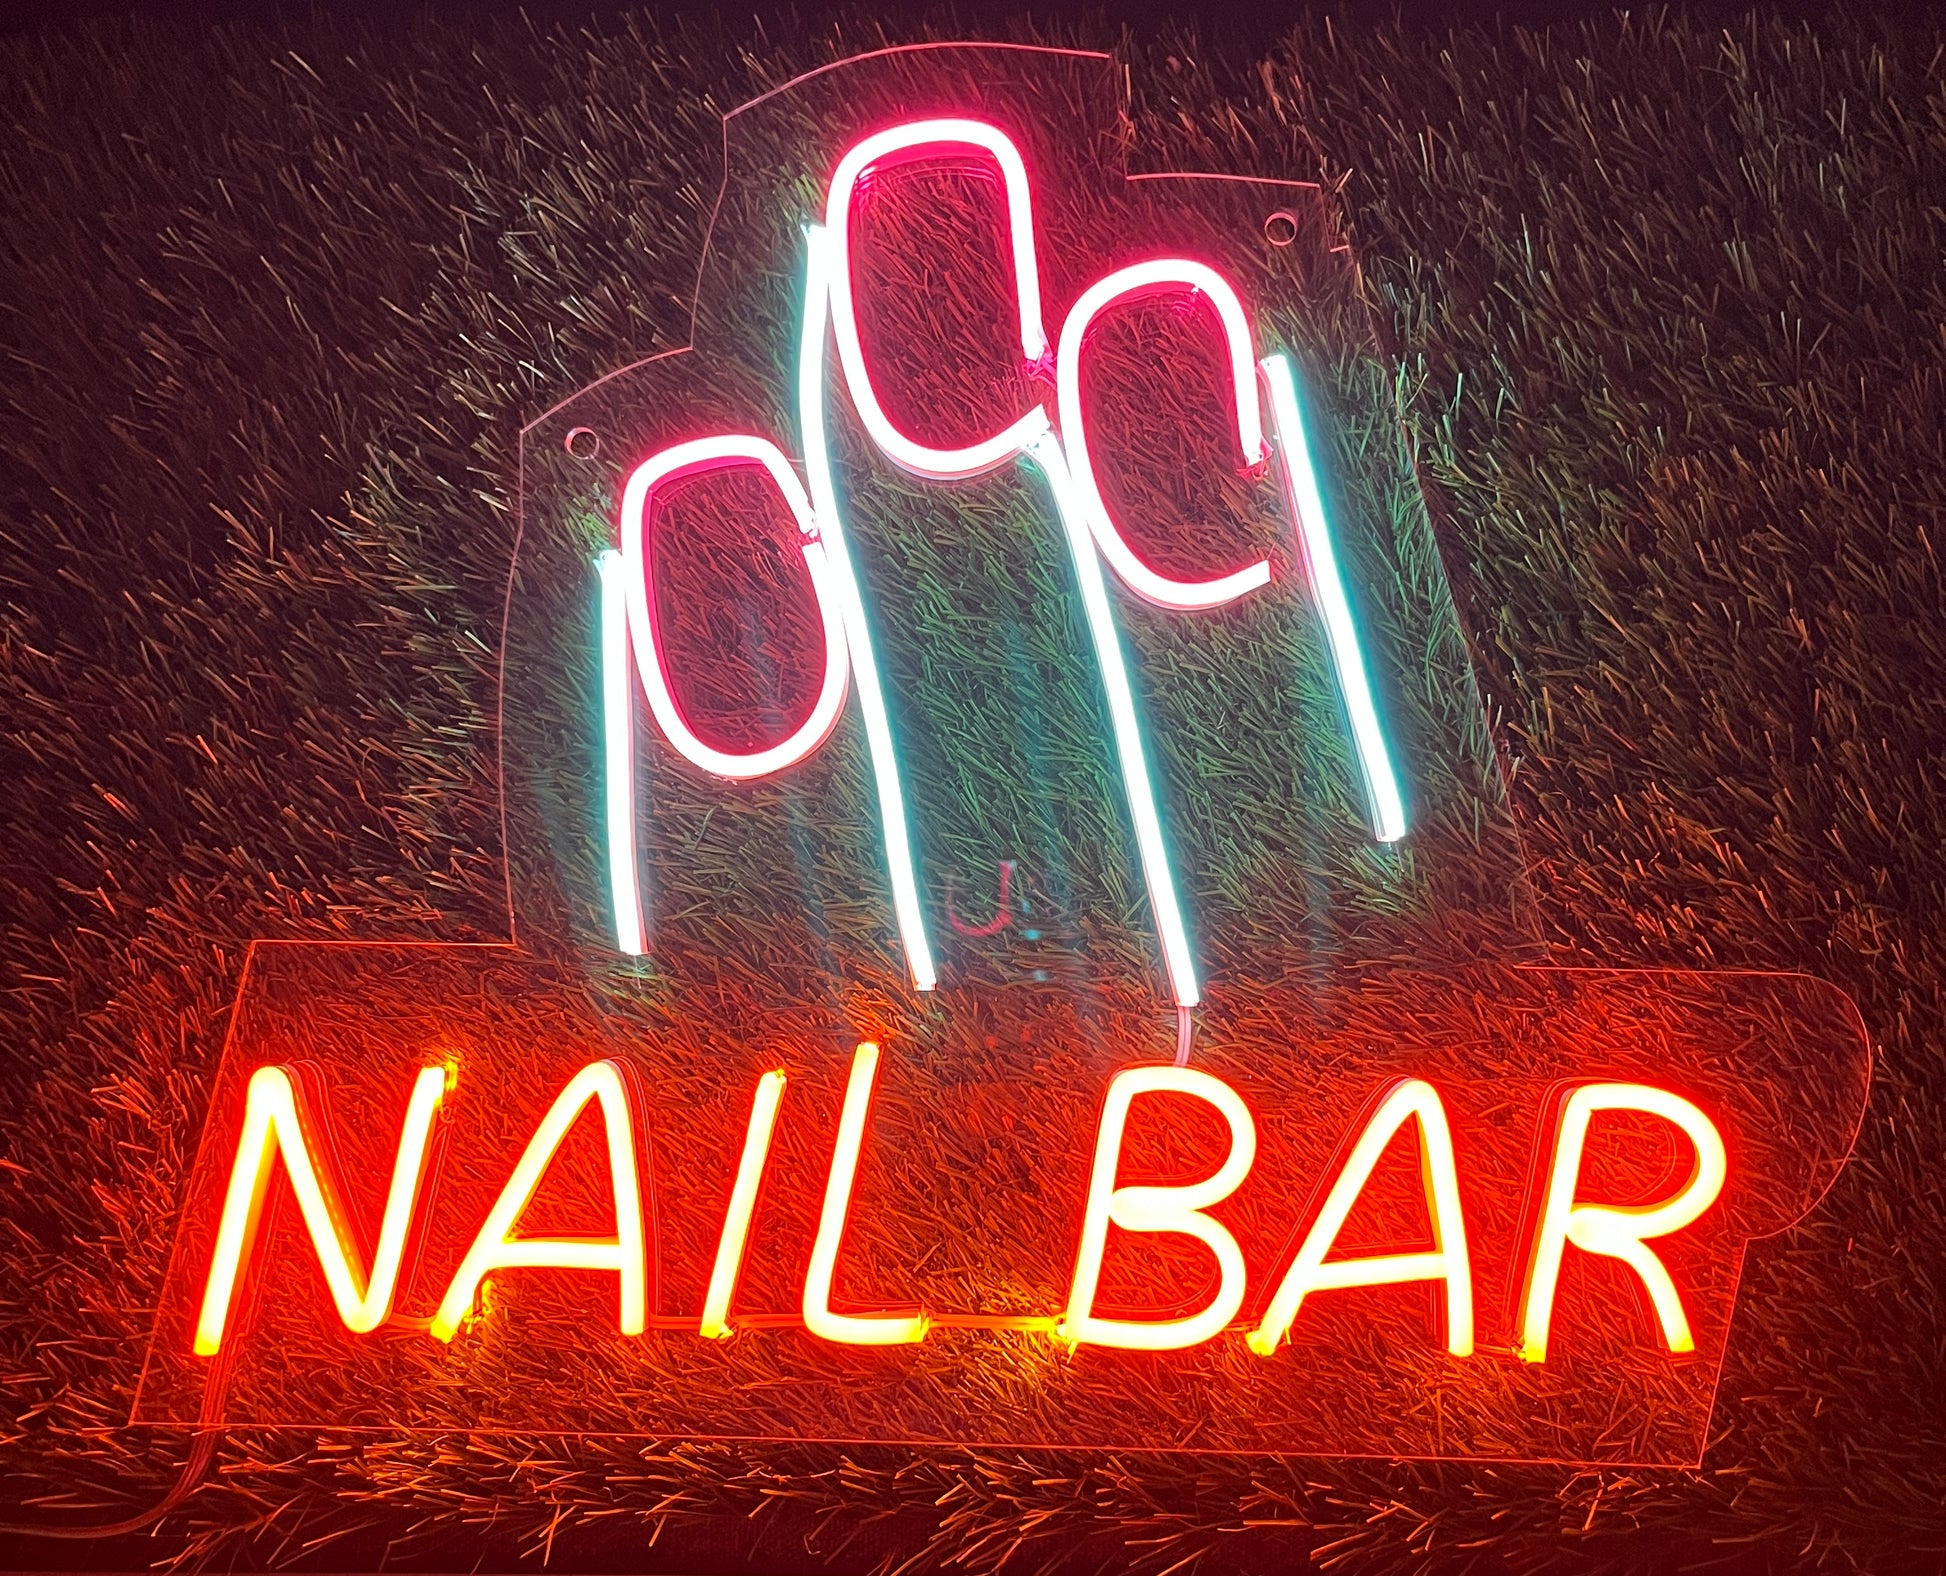 Nail Bar Neon Sign - Neonzastudio